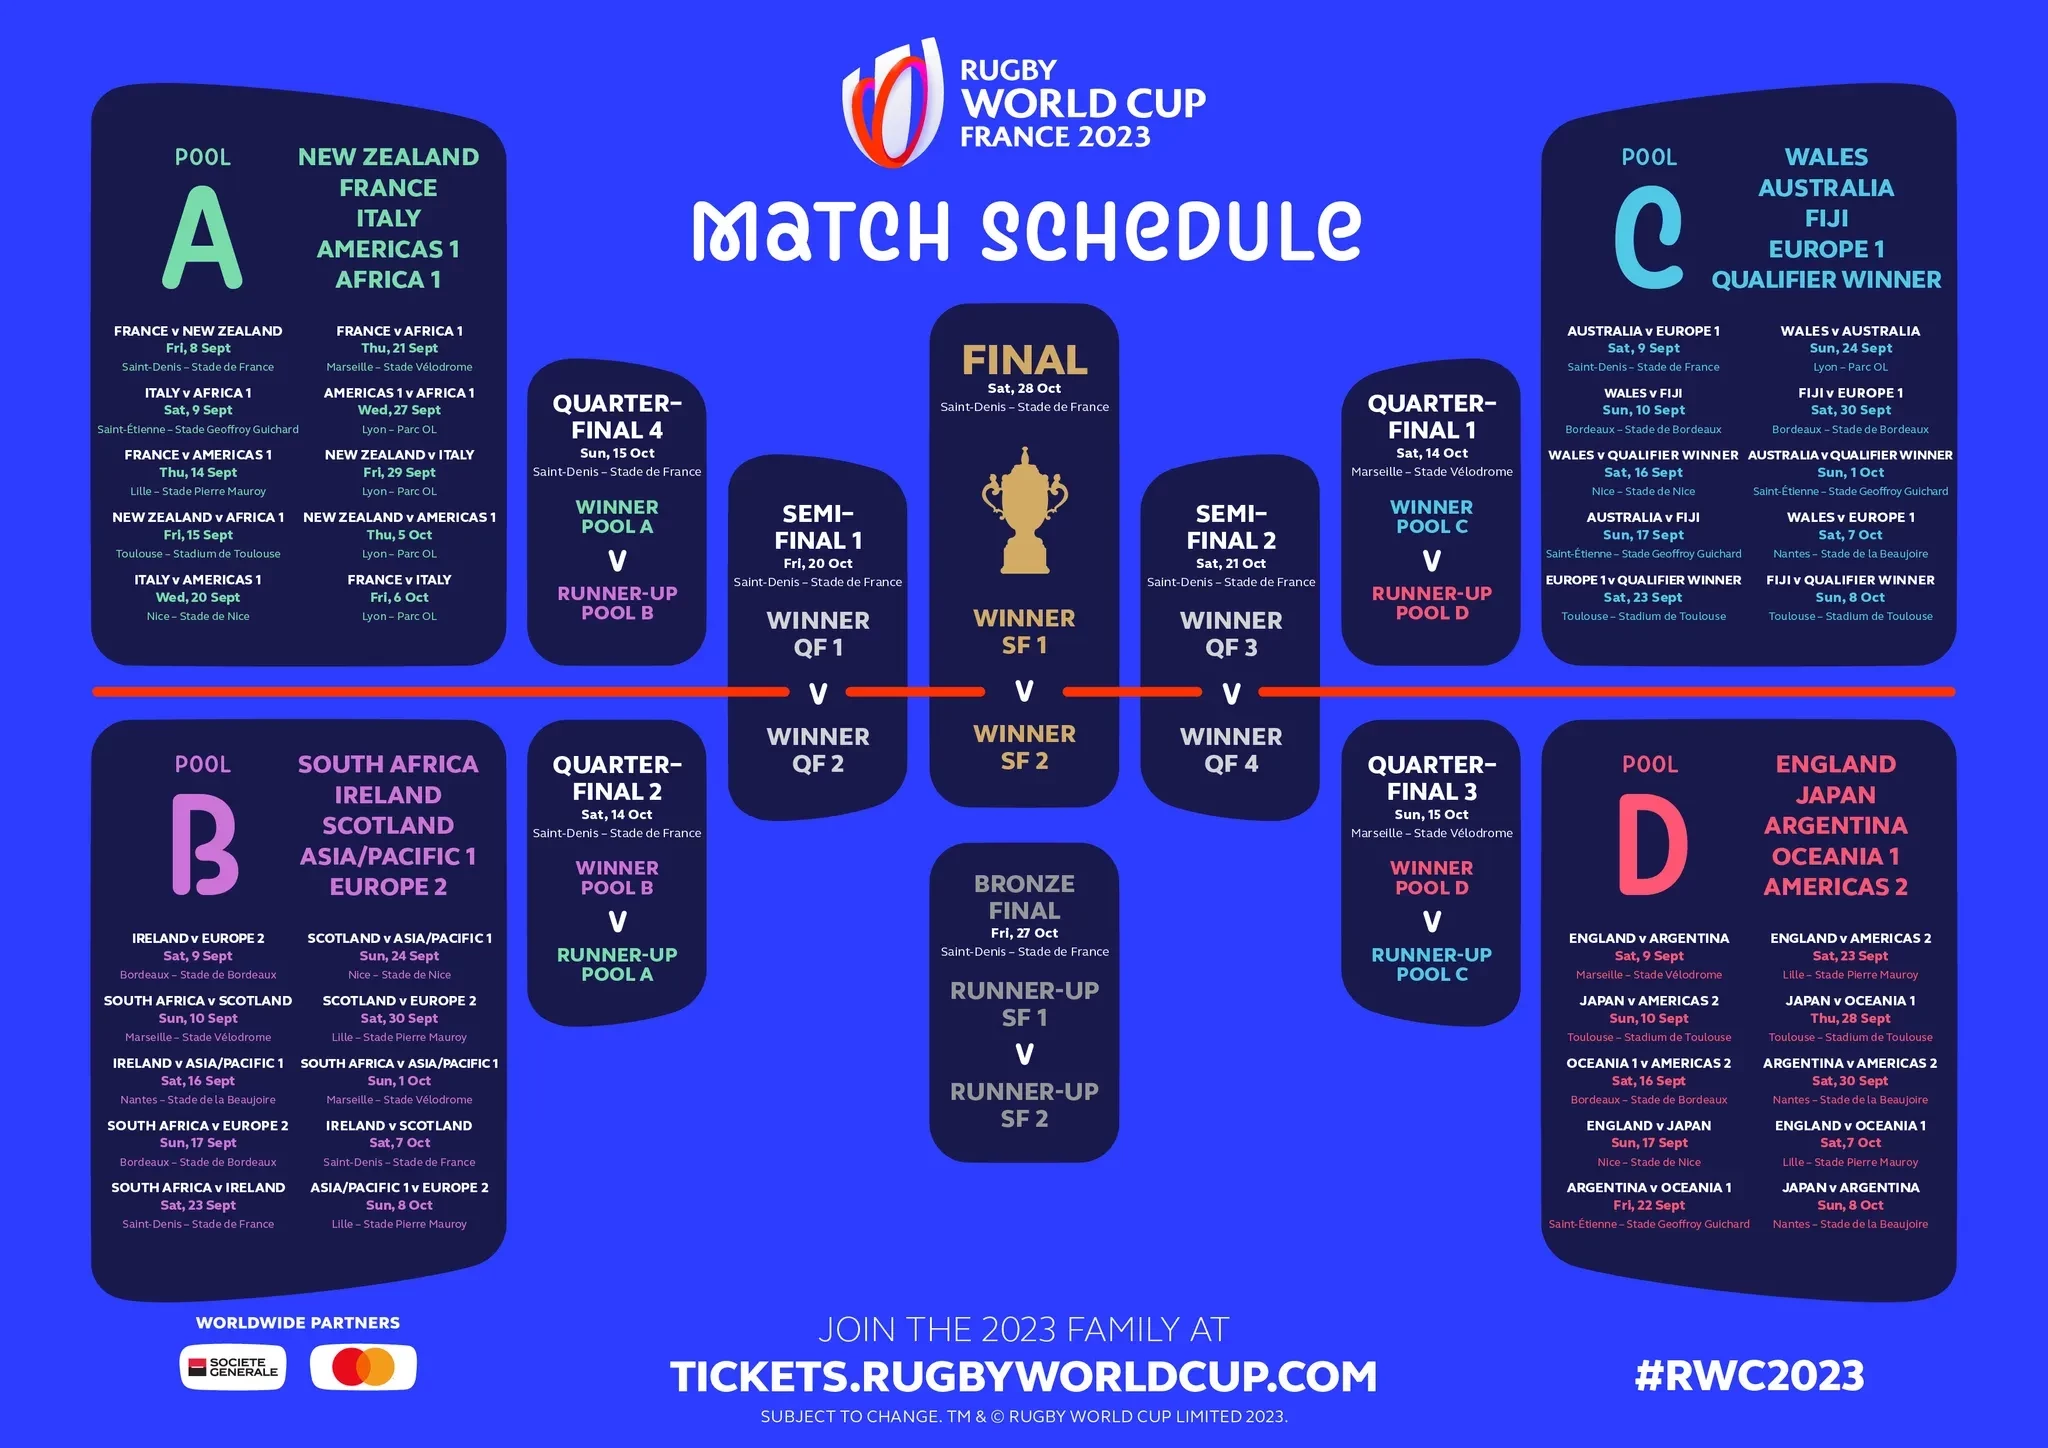 Le calendrier des matchs de la Coupe du monde de rugby 2023 en France a été publié © World Rugby